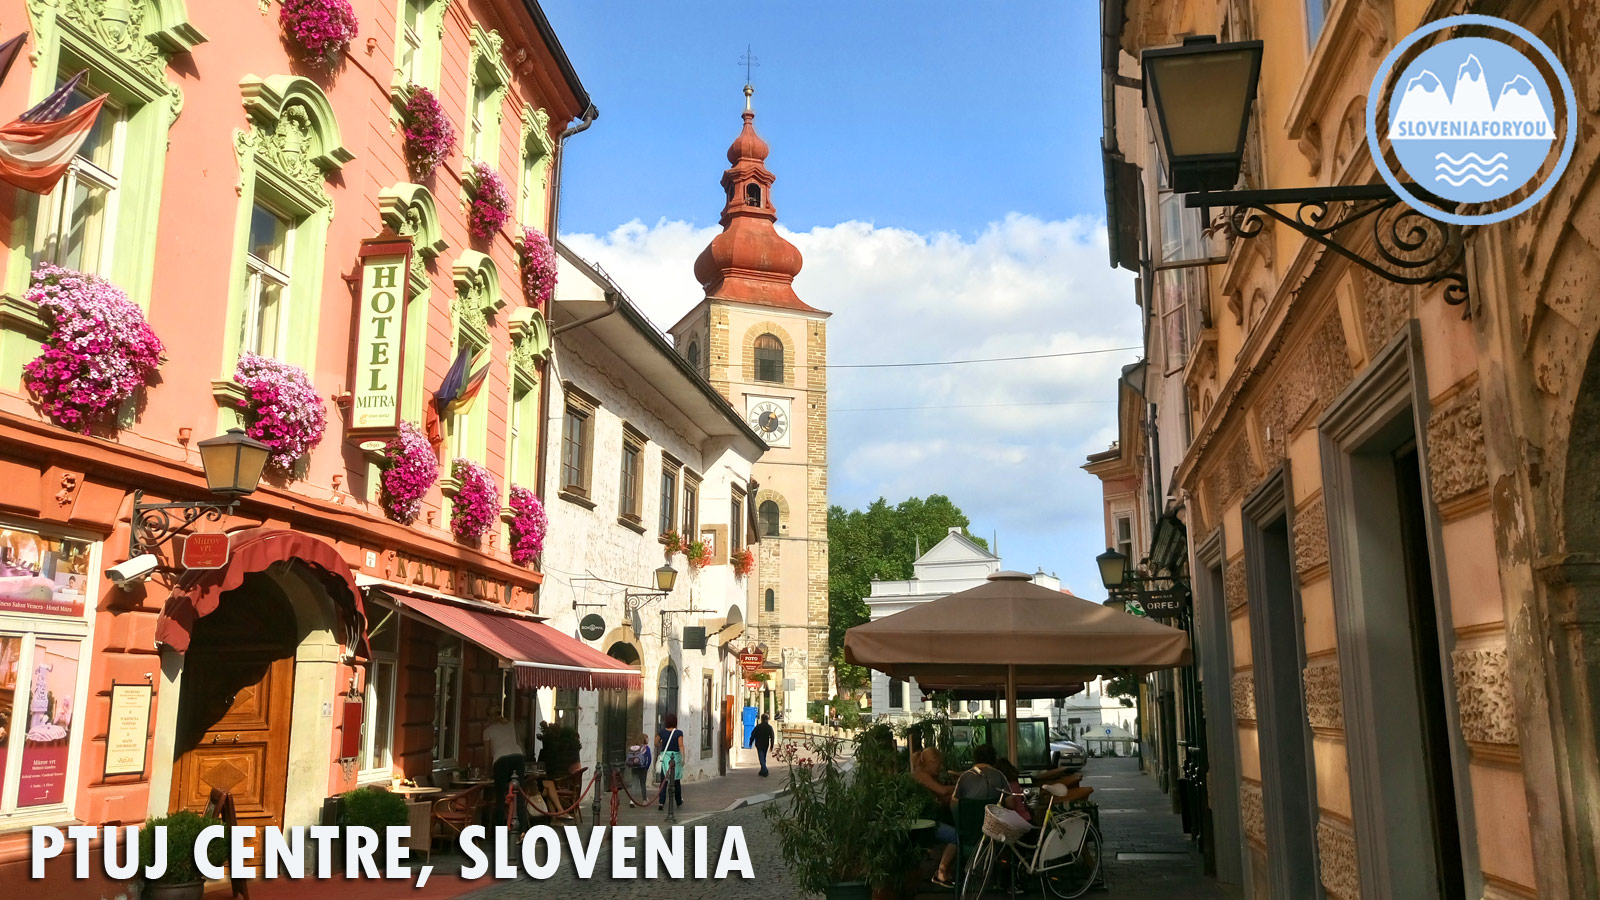 Ljubljanica River_Sloveniaforyou